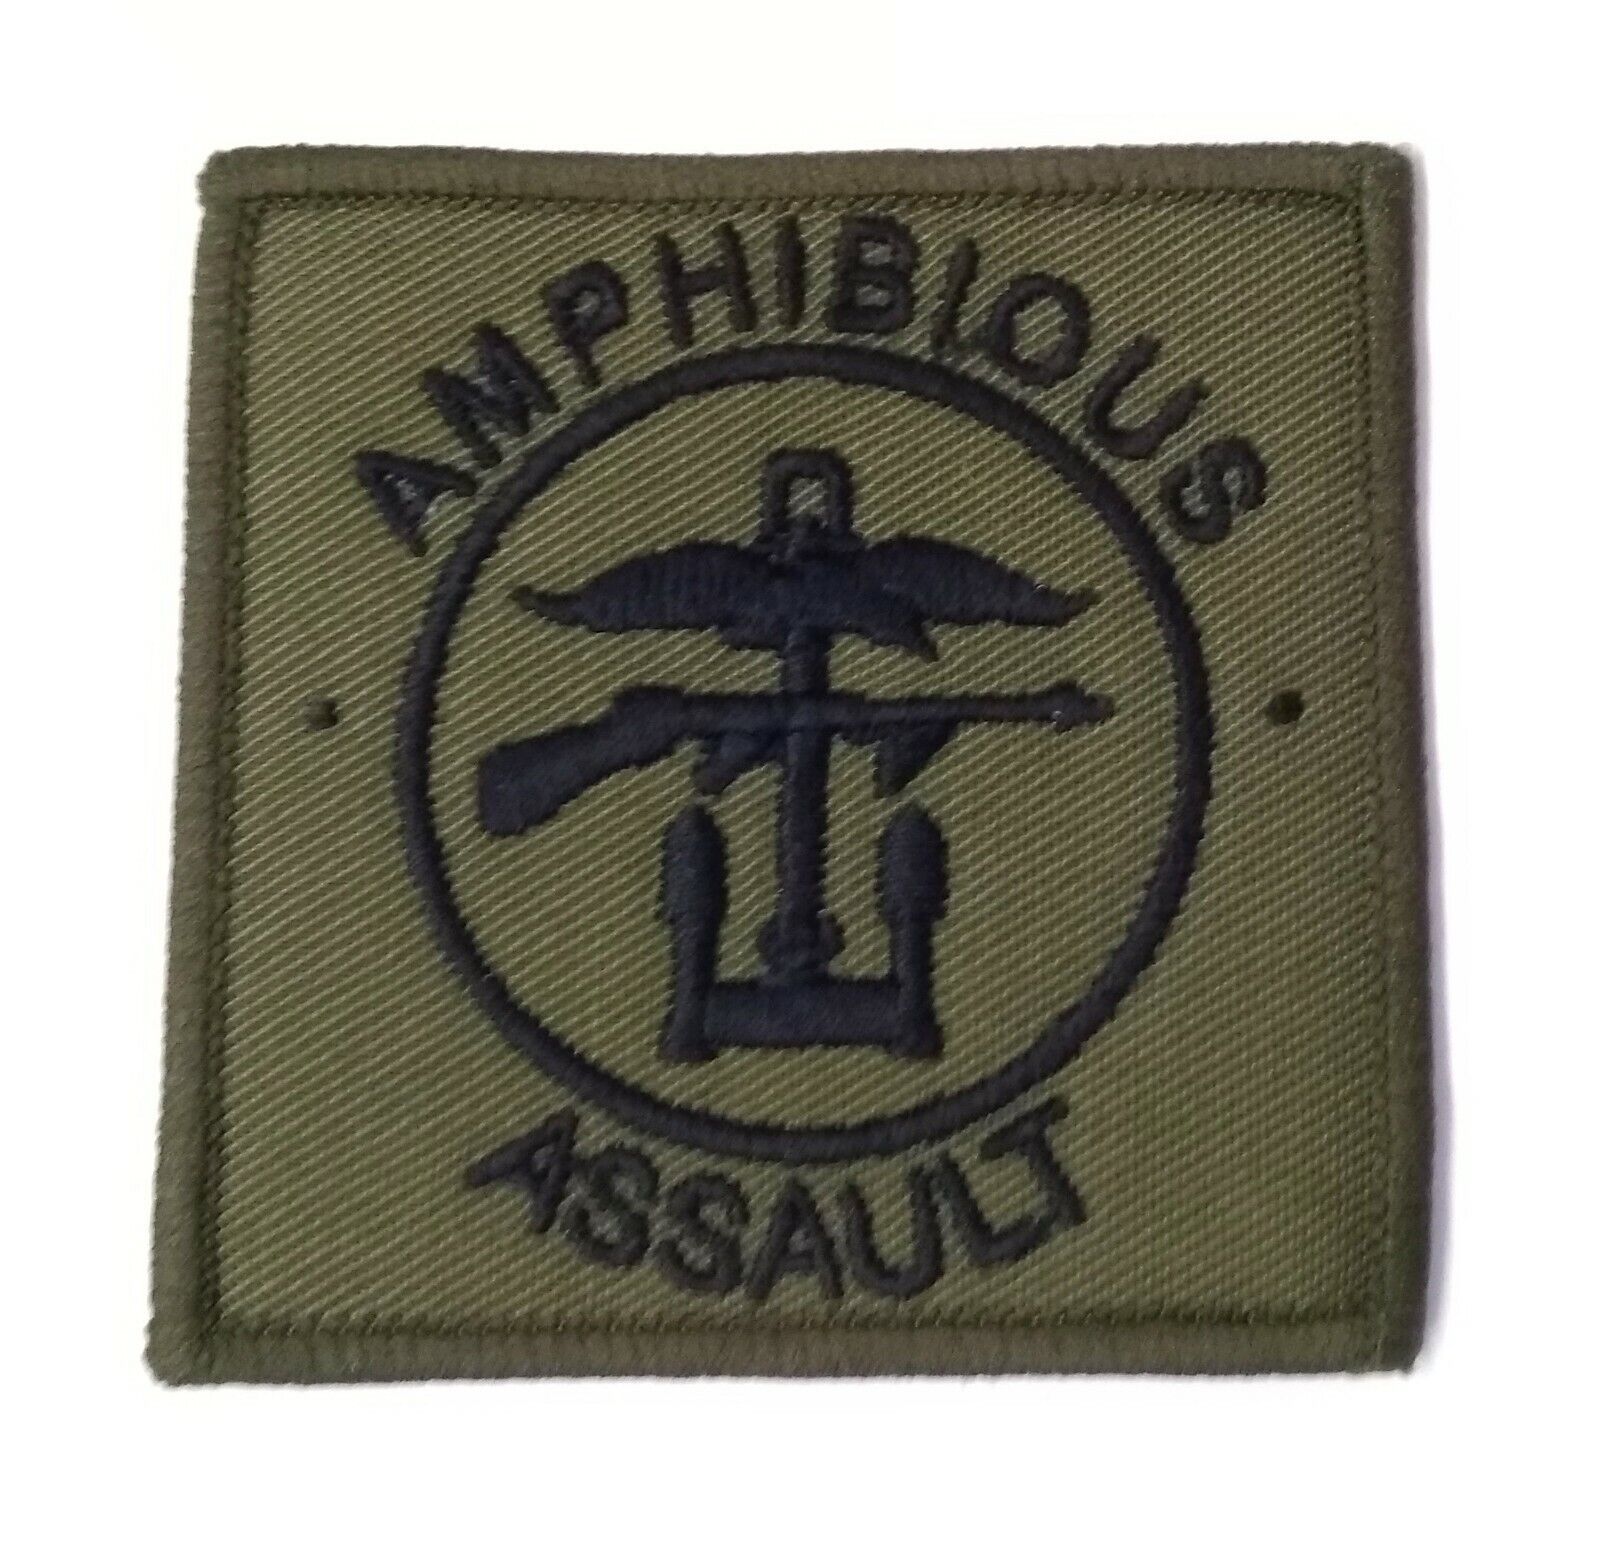 Amphibie Assaut Royal Marines Royal Marine Commando Patch / Badge - Neuf